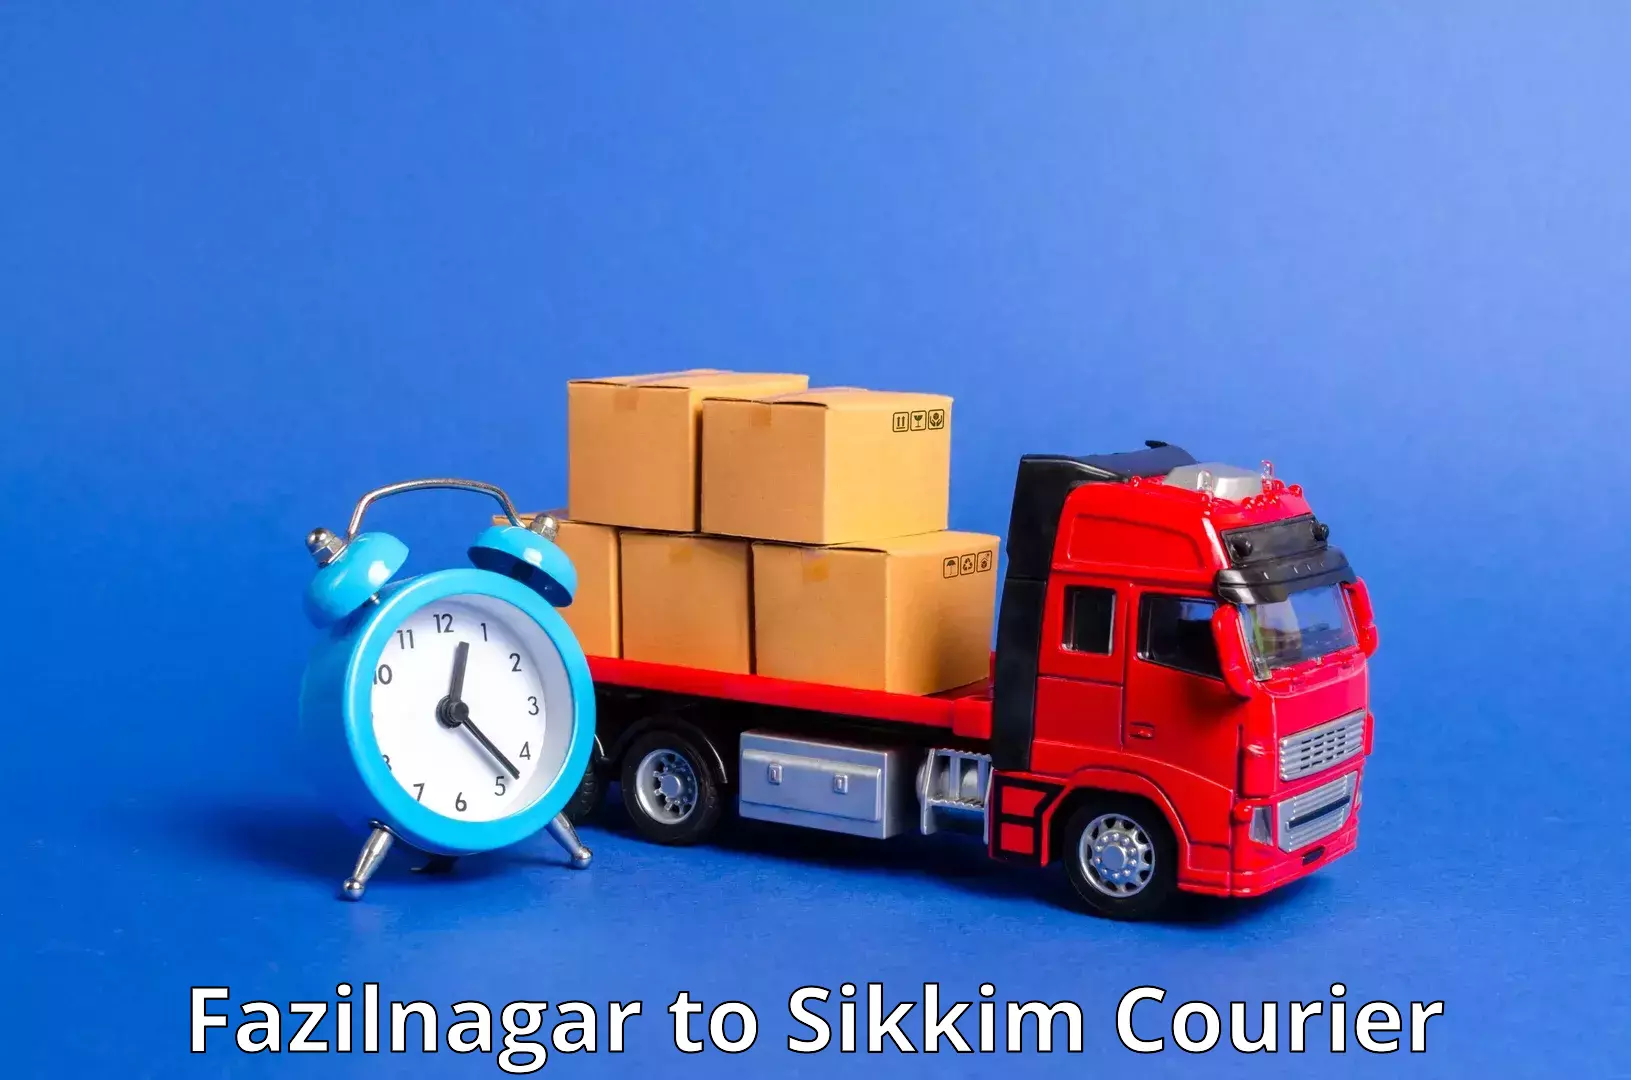 Discounted shipping Fazilnagar to Geyzing